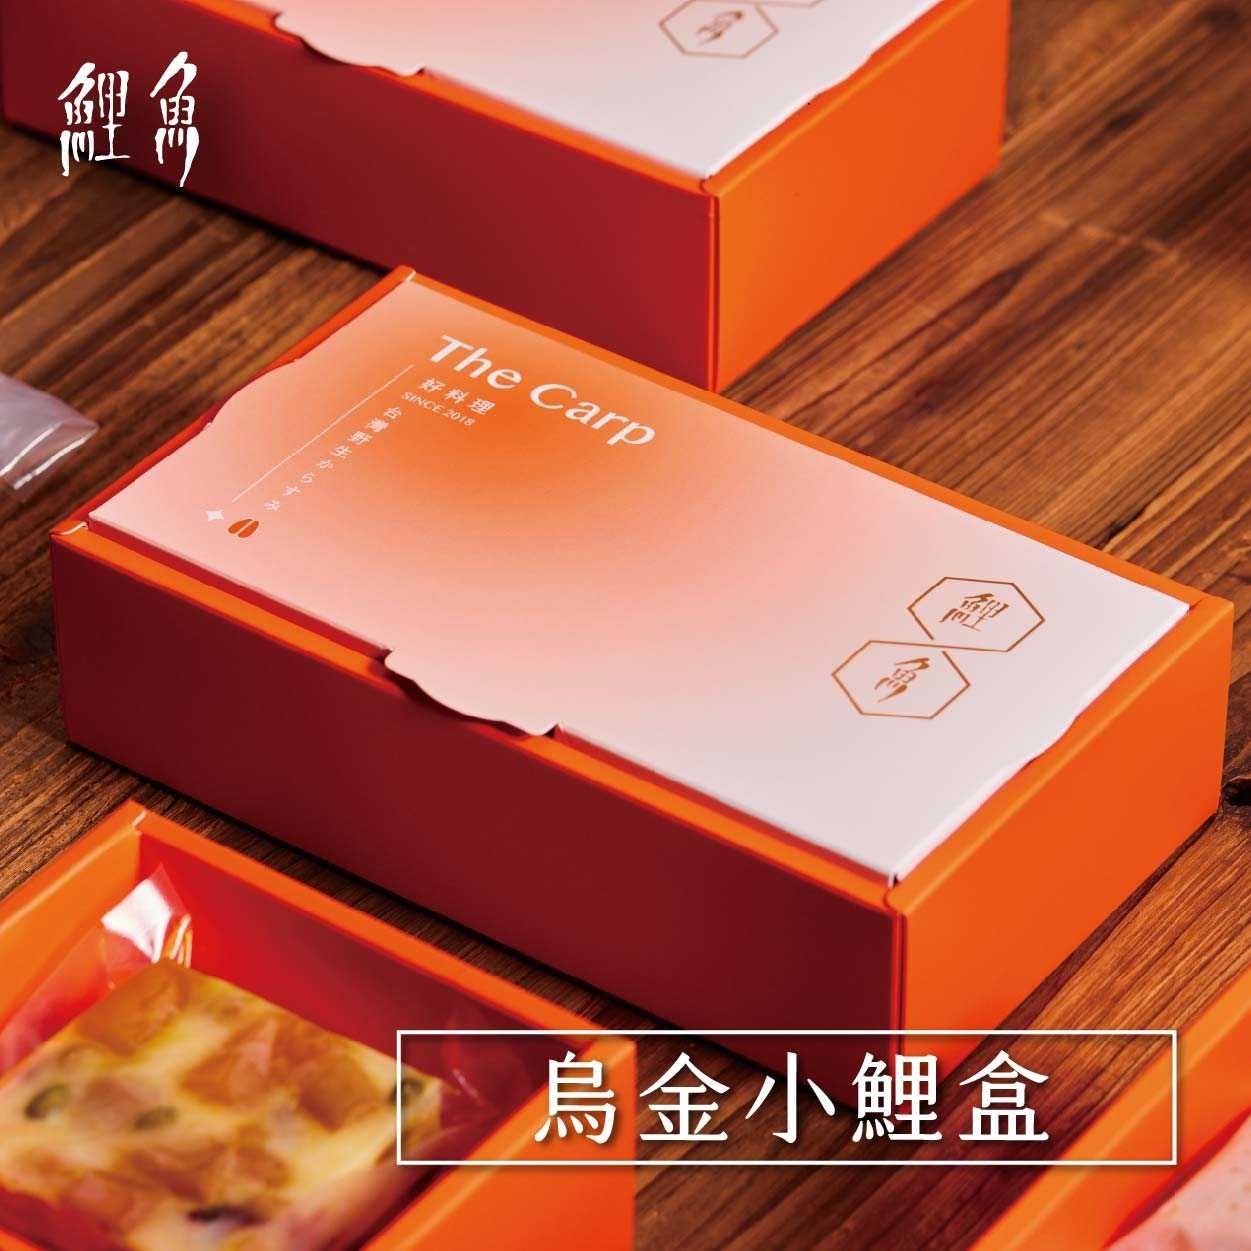 【鯉魚×好料理】烏金小鯉盒自由配